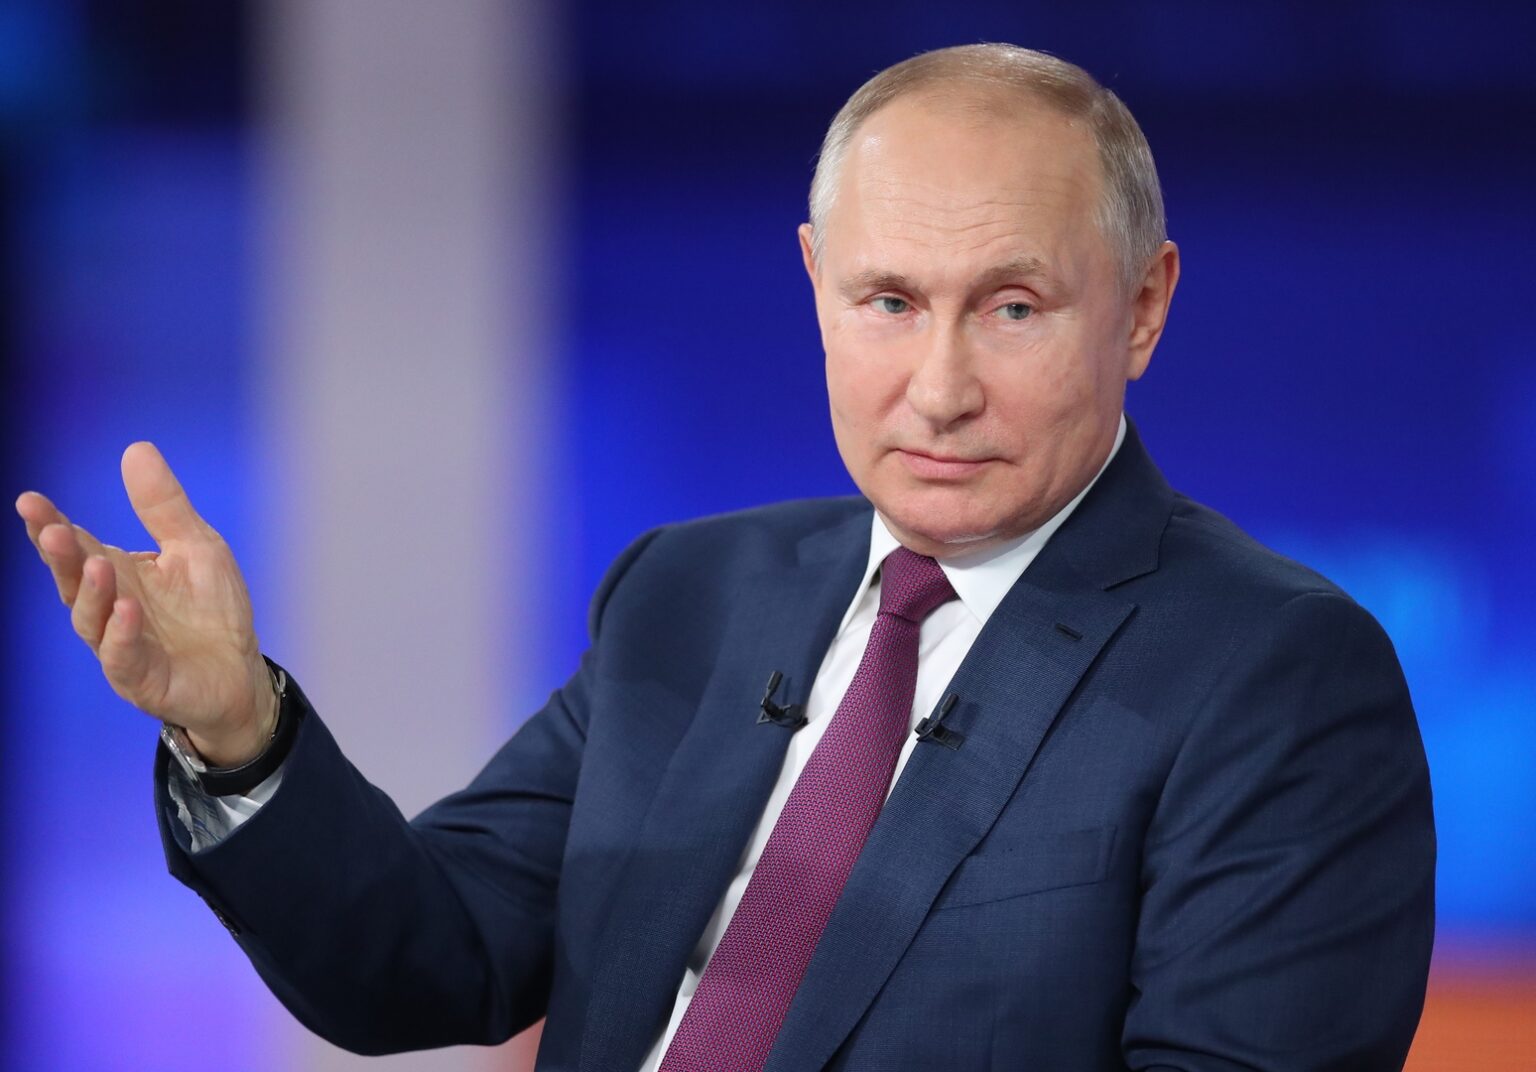 قرار قاس من بوتين اتجاه دولة أوروبية